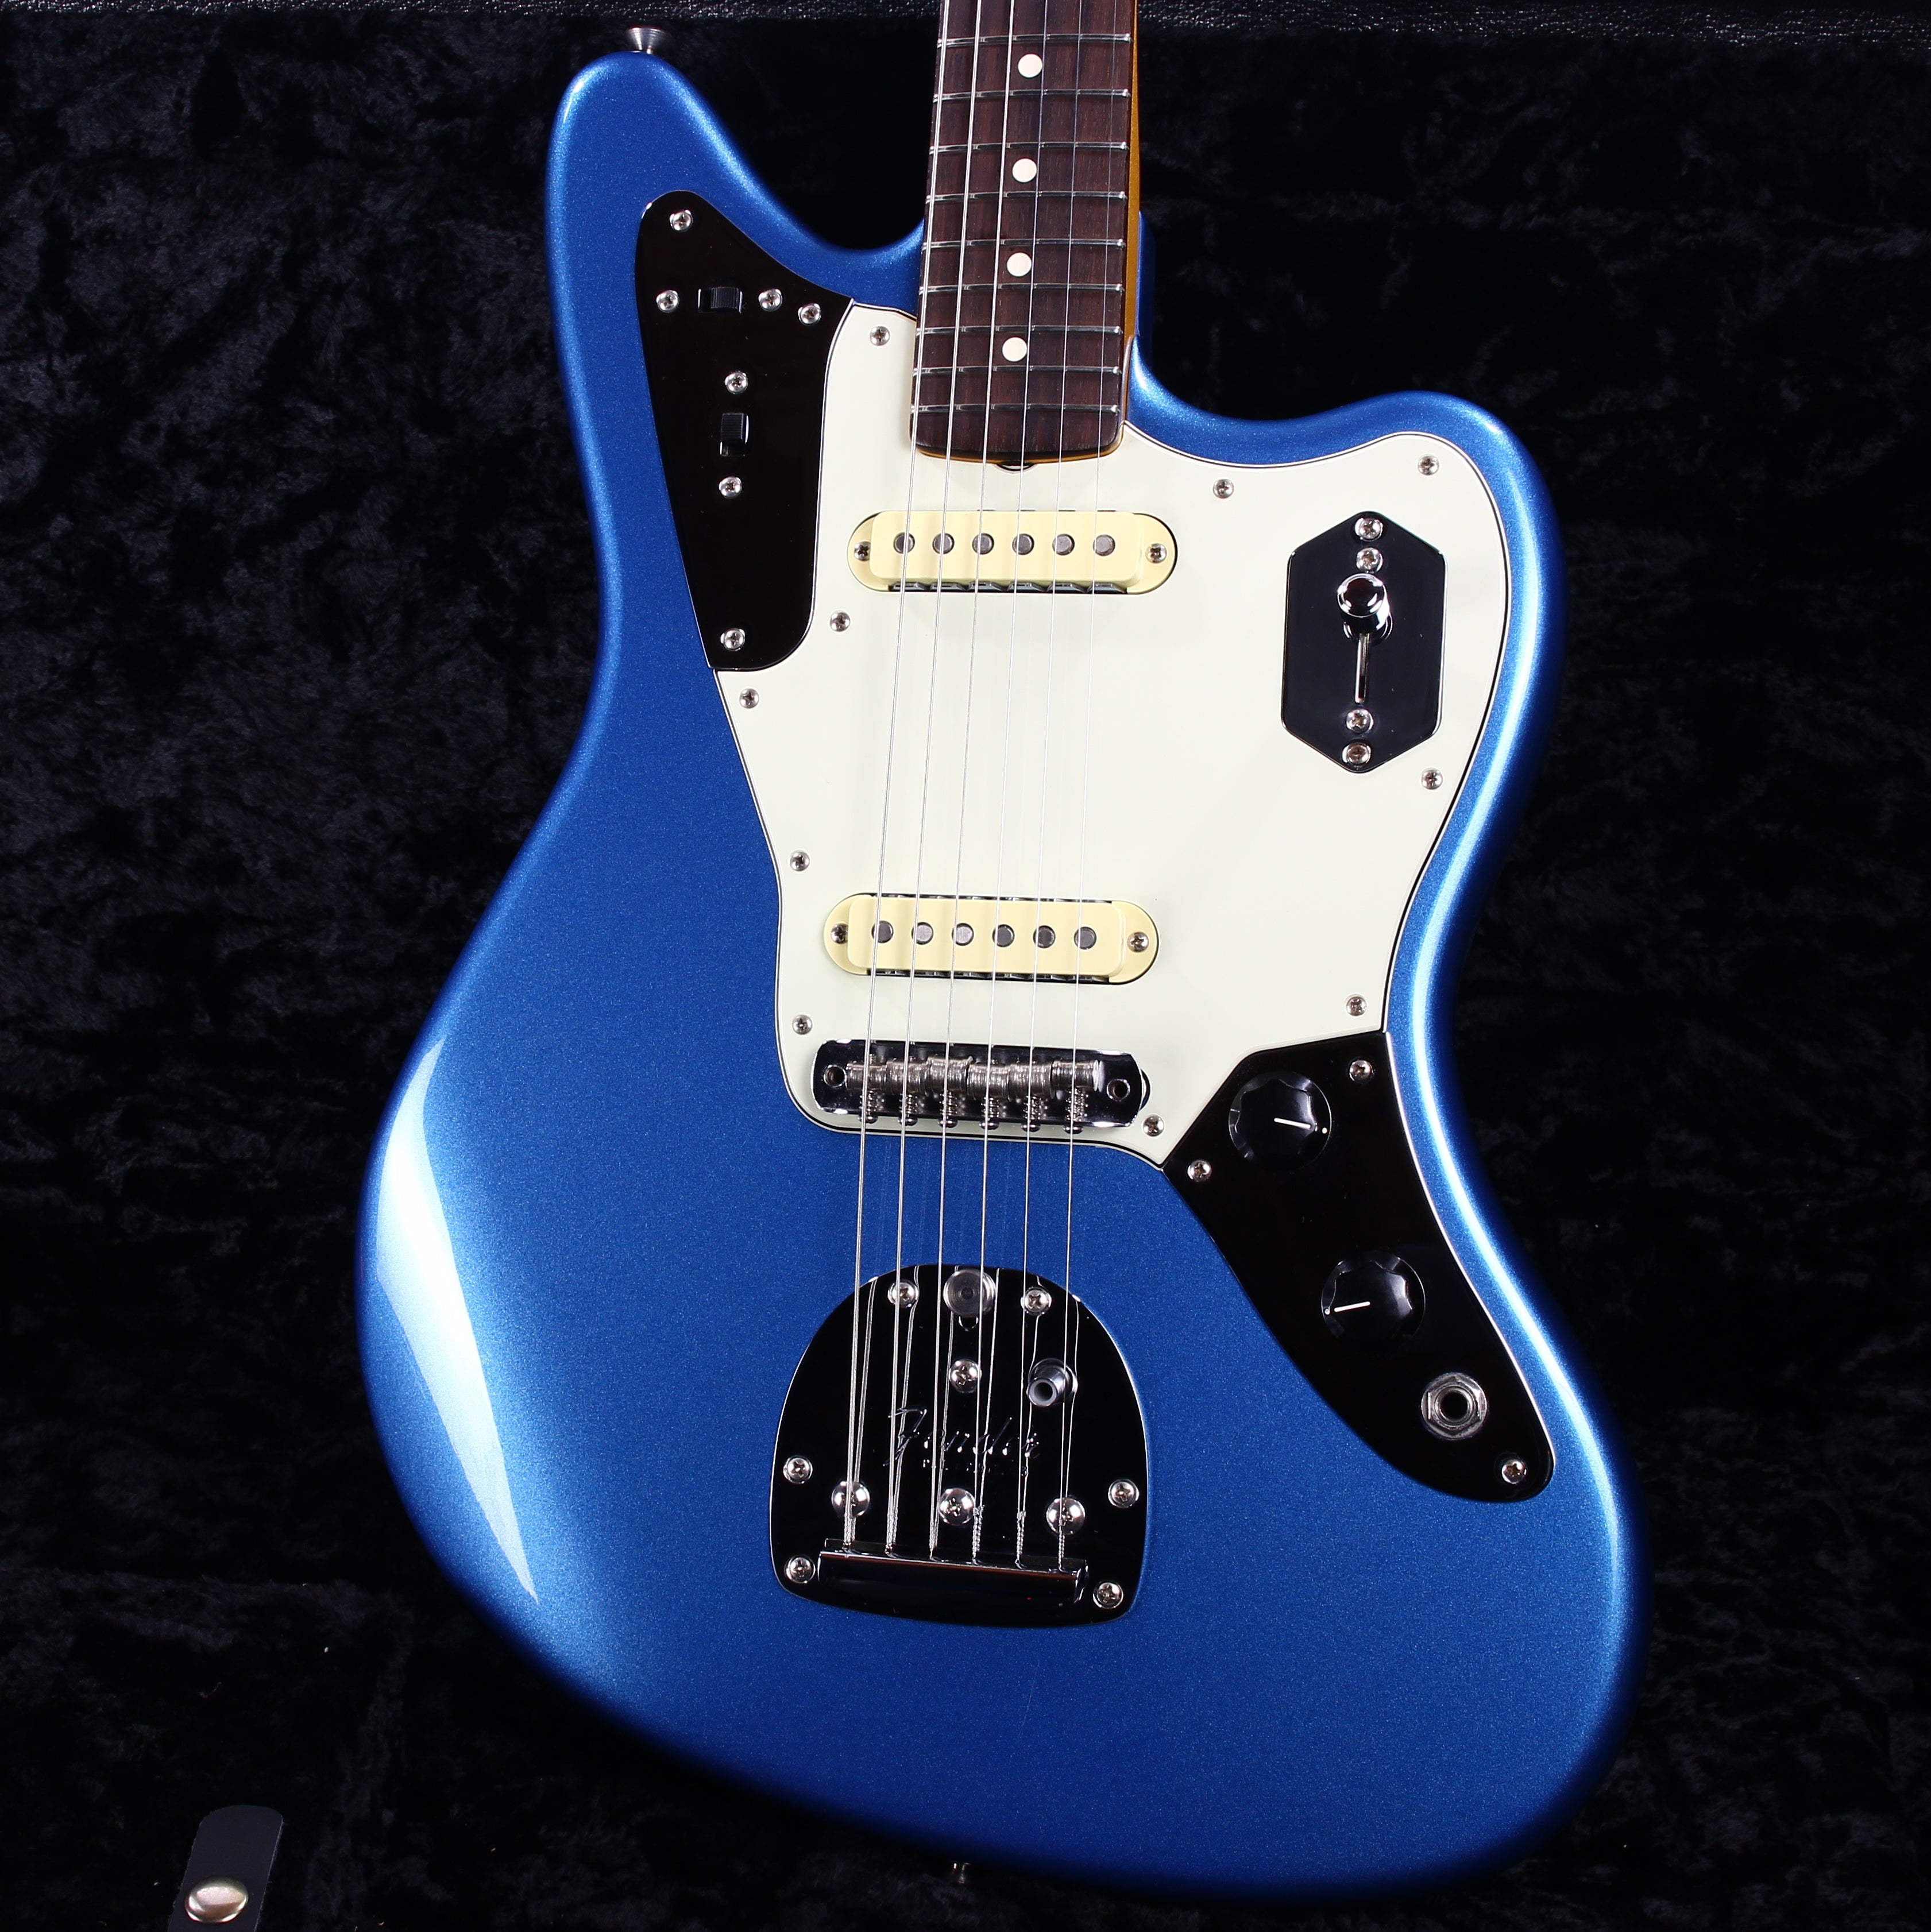 *SOLD*  2018 Fender USA Johnny Marr Jaguar LAKE PLACID BLUE! Rare Limited Edition! American Vintage Signature Model jazzmaster